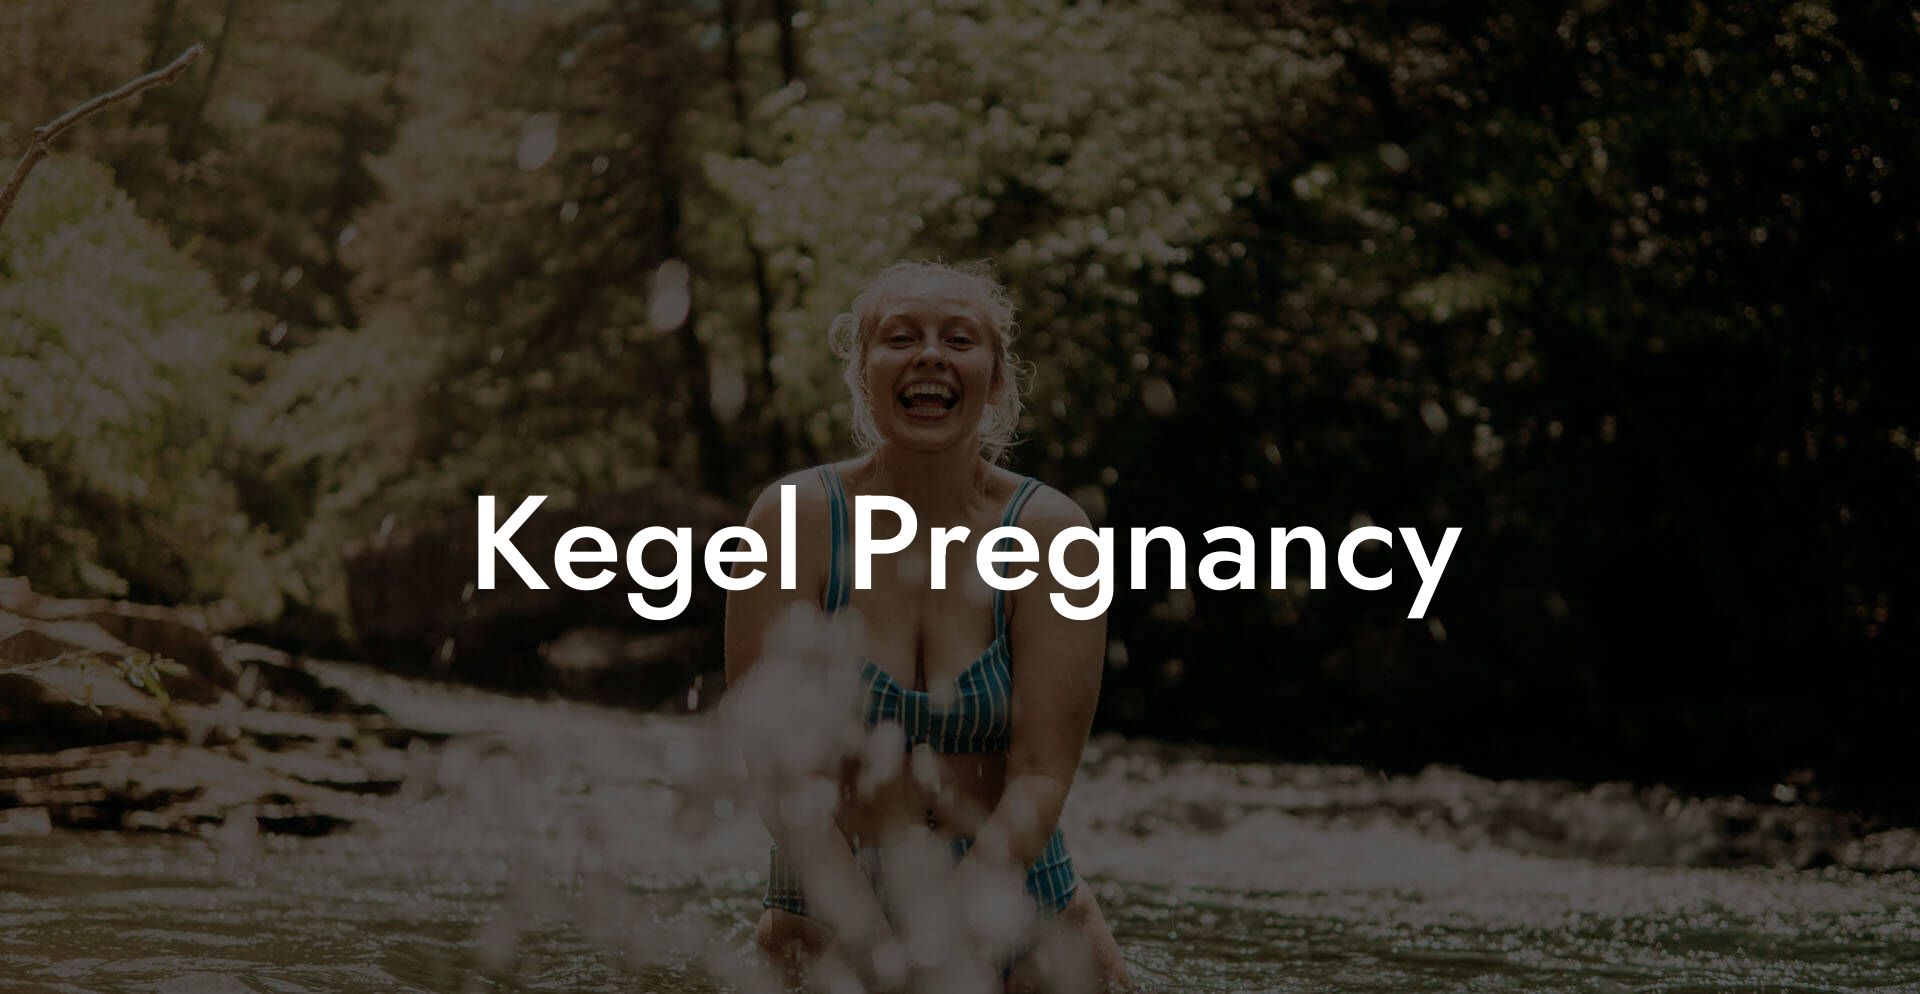 Kegel Pregnancy